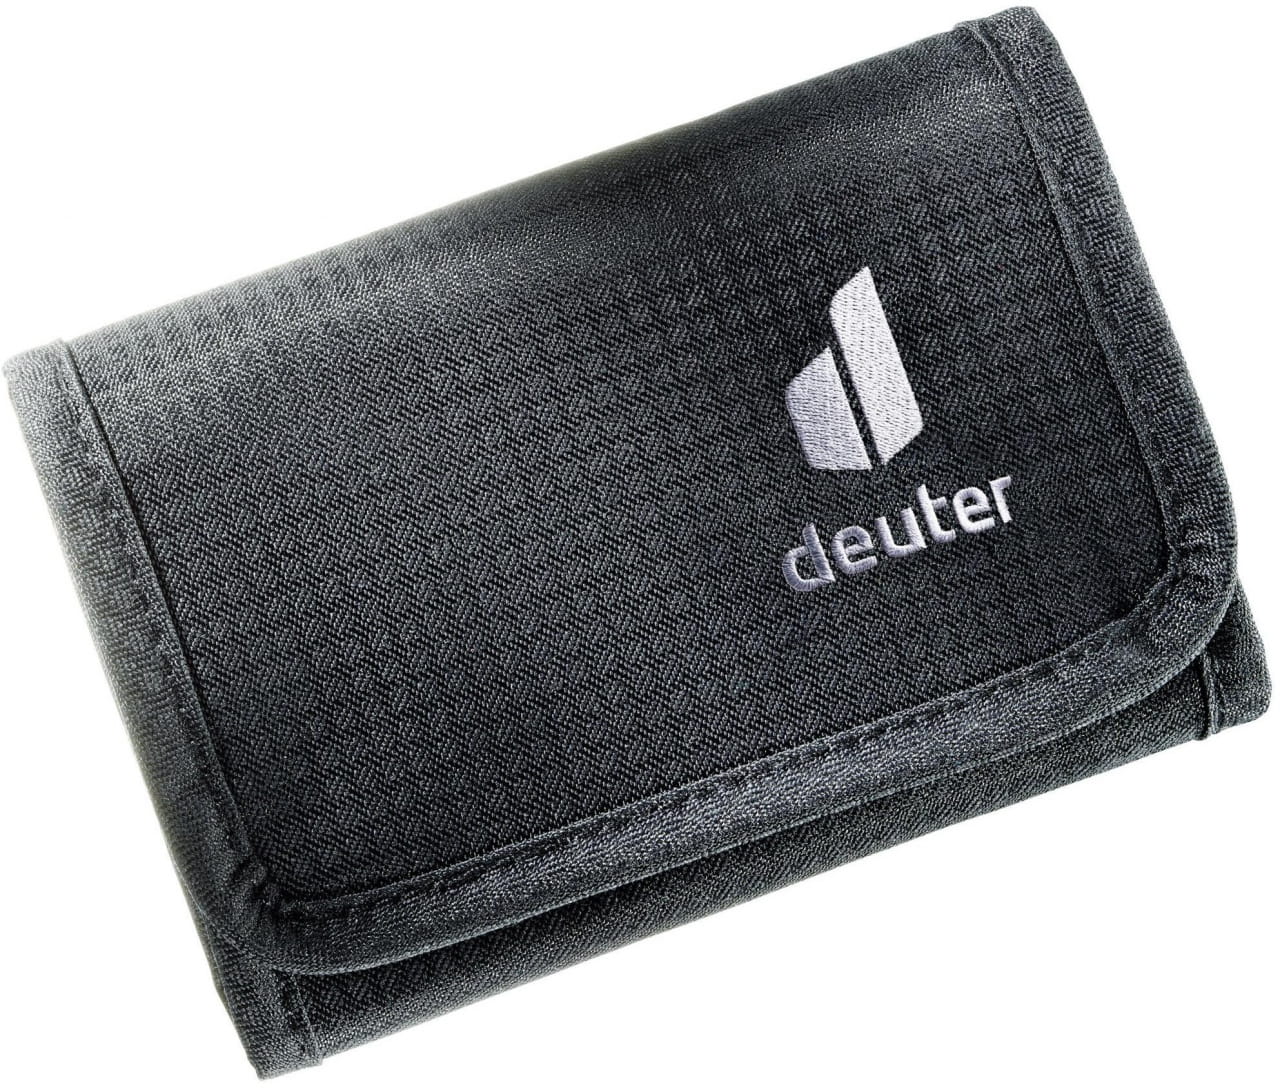 Brieftasche Deuter Travel Wallet